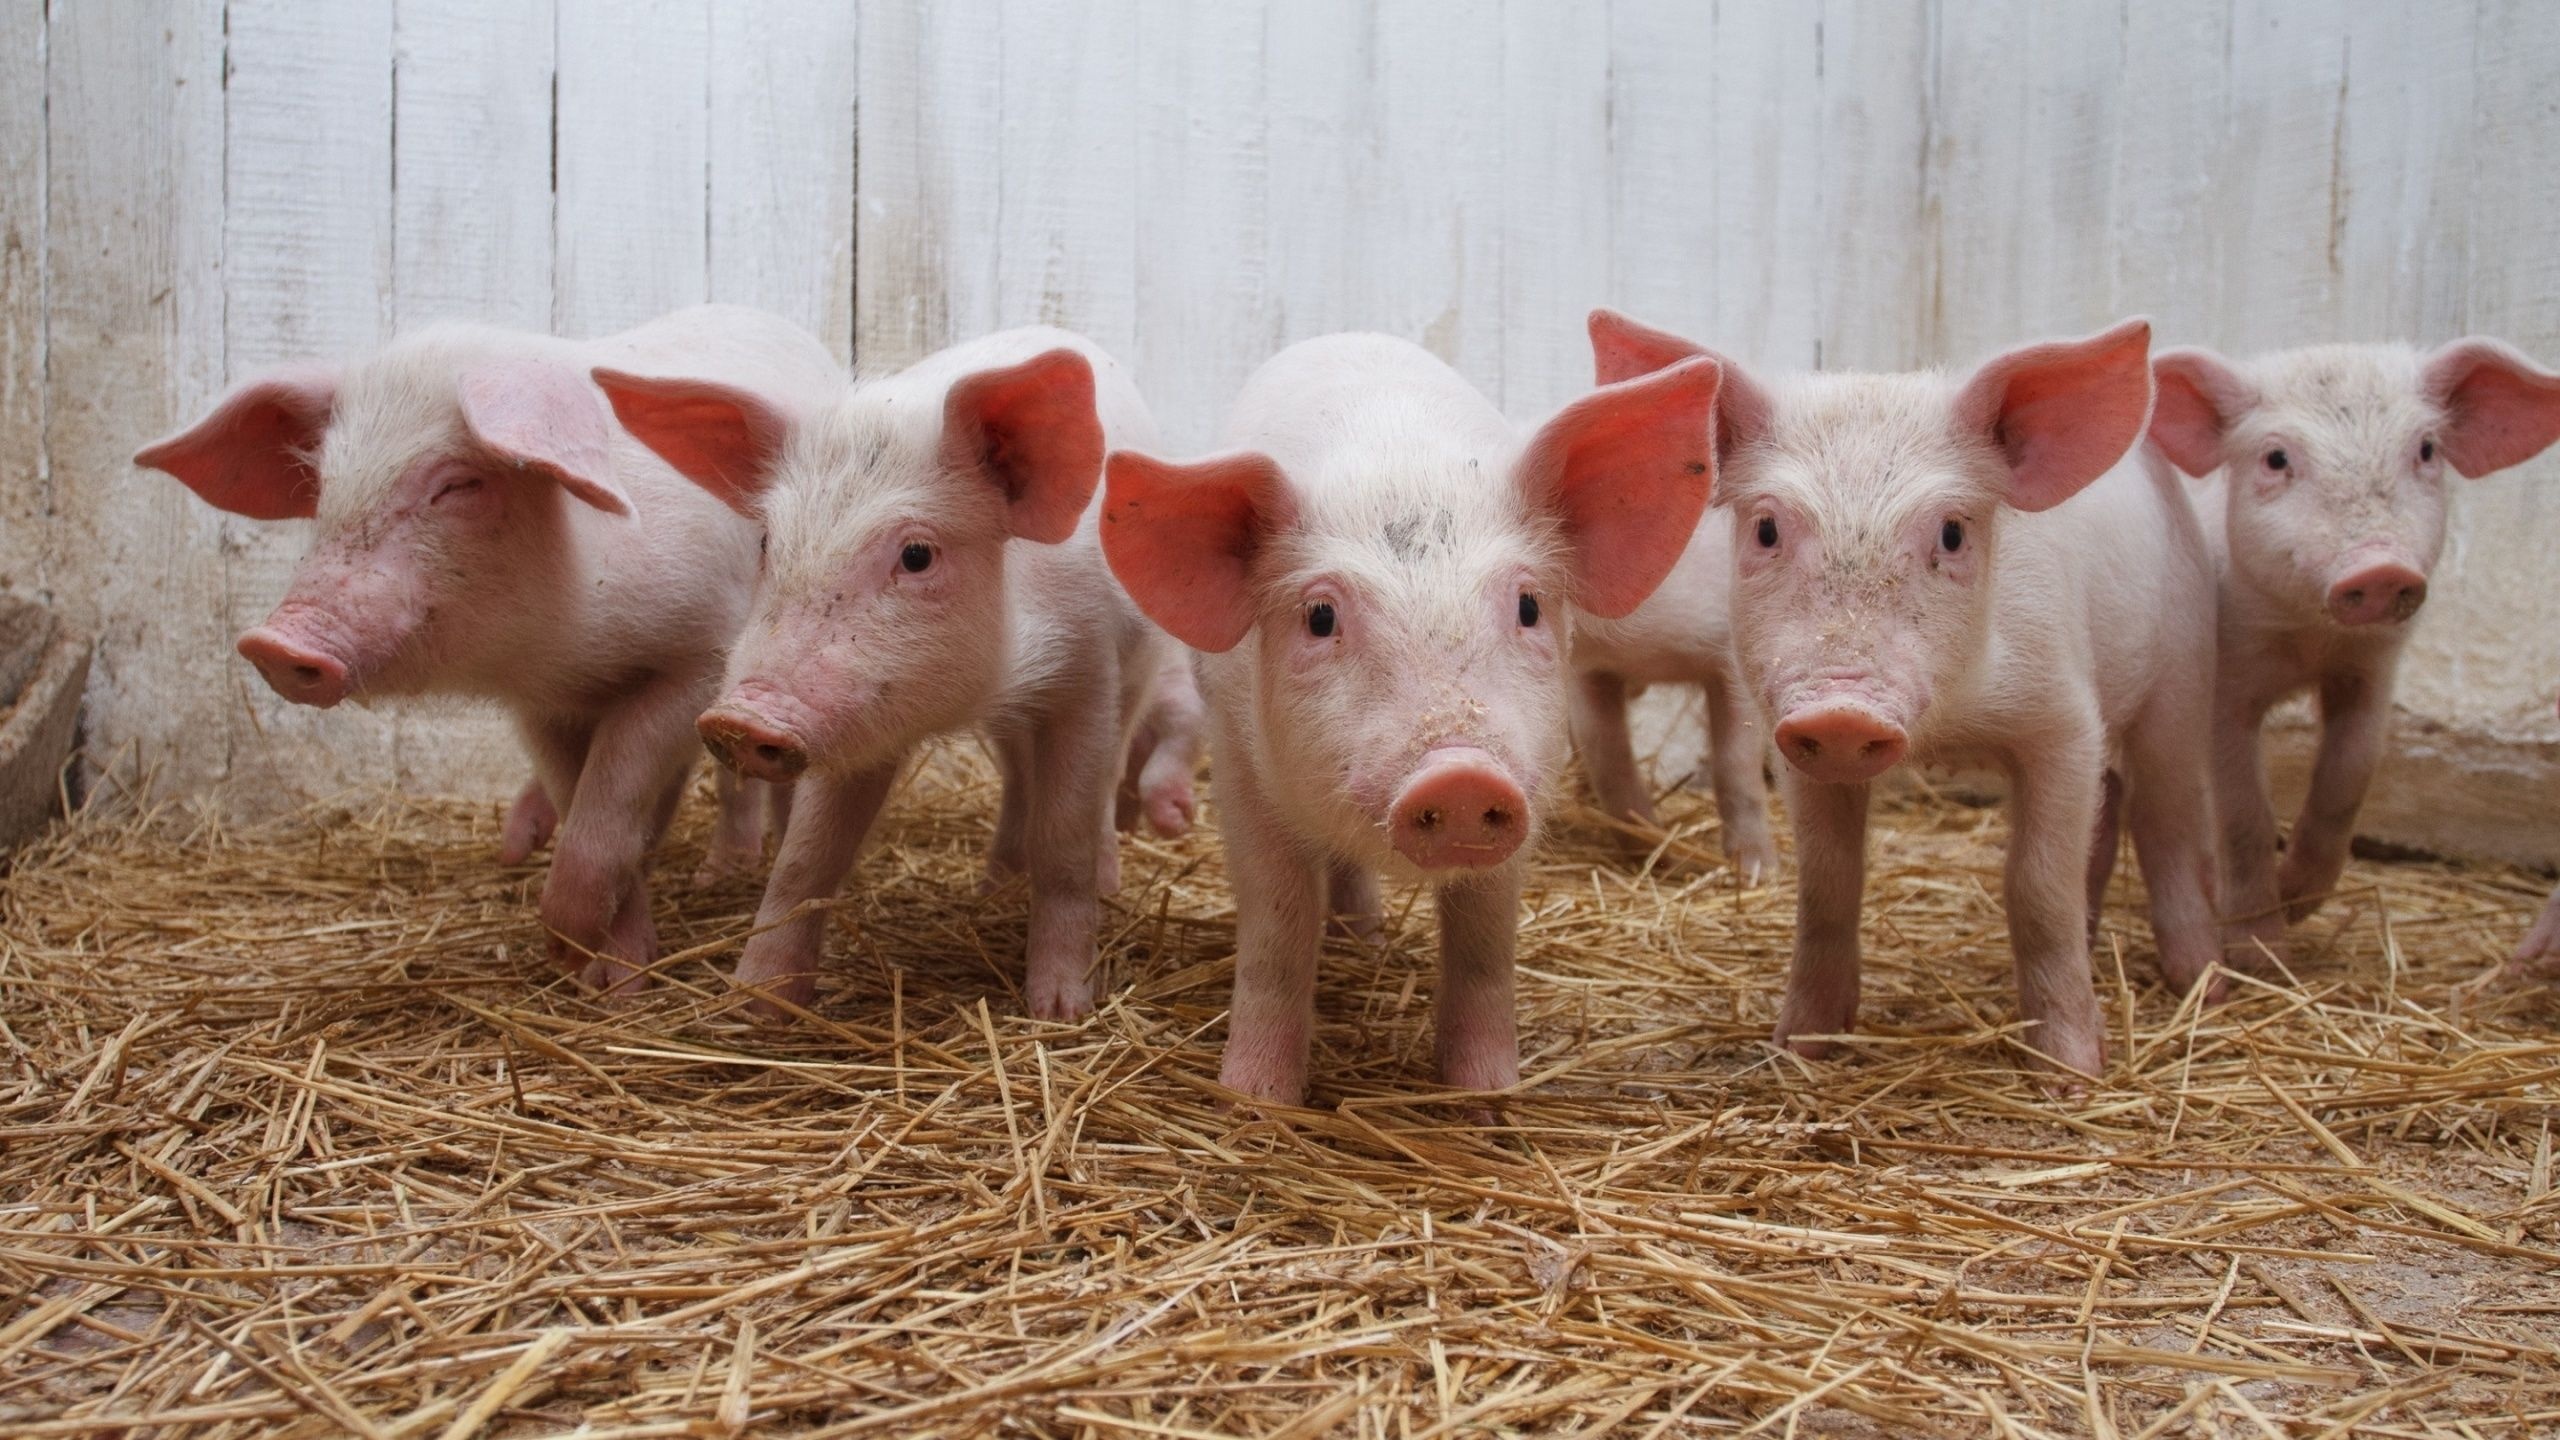 Playful piglets, Cute farm animals, Oink and snort, Piggy mischief, 2560x1440 HD Desktop